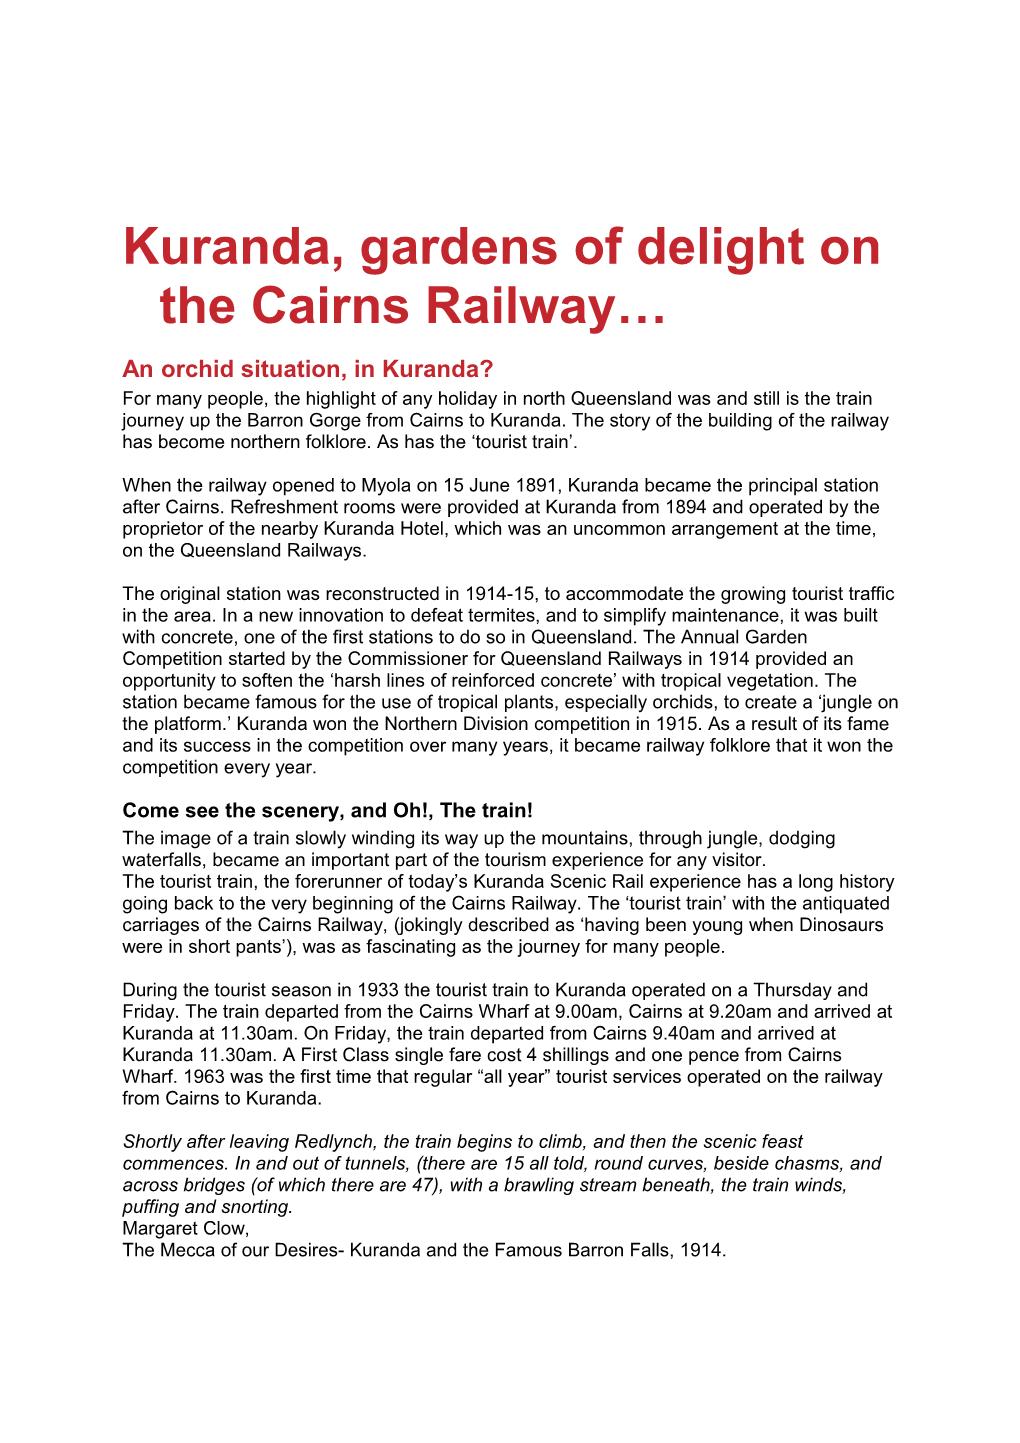 Kuranda, Gardens of Delight on the Cairns Railway